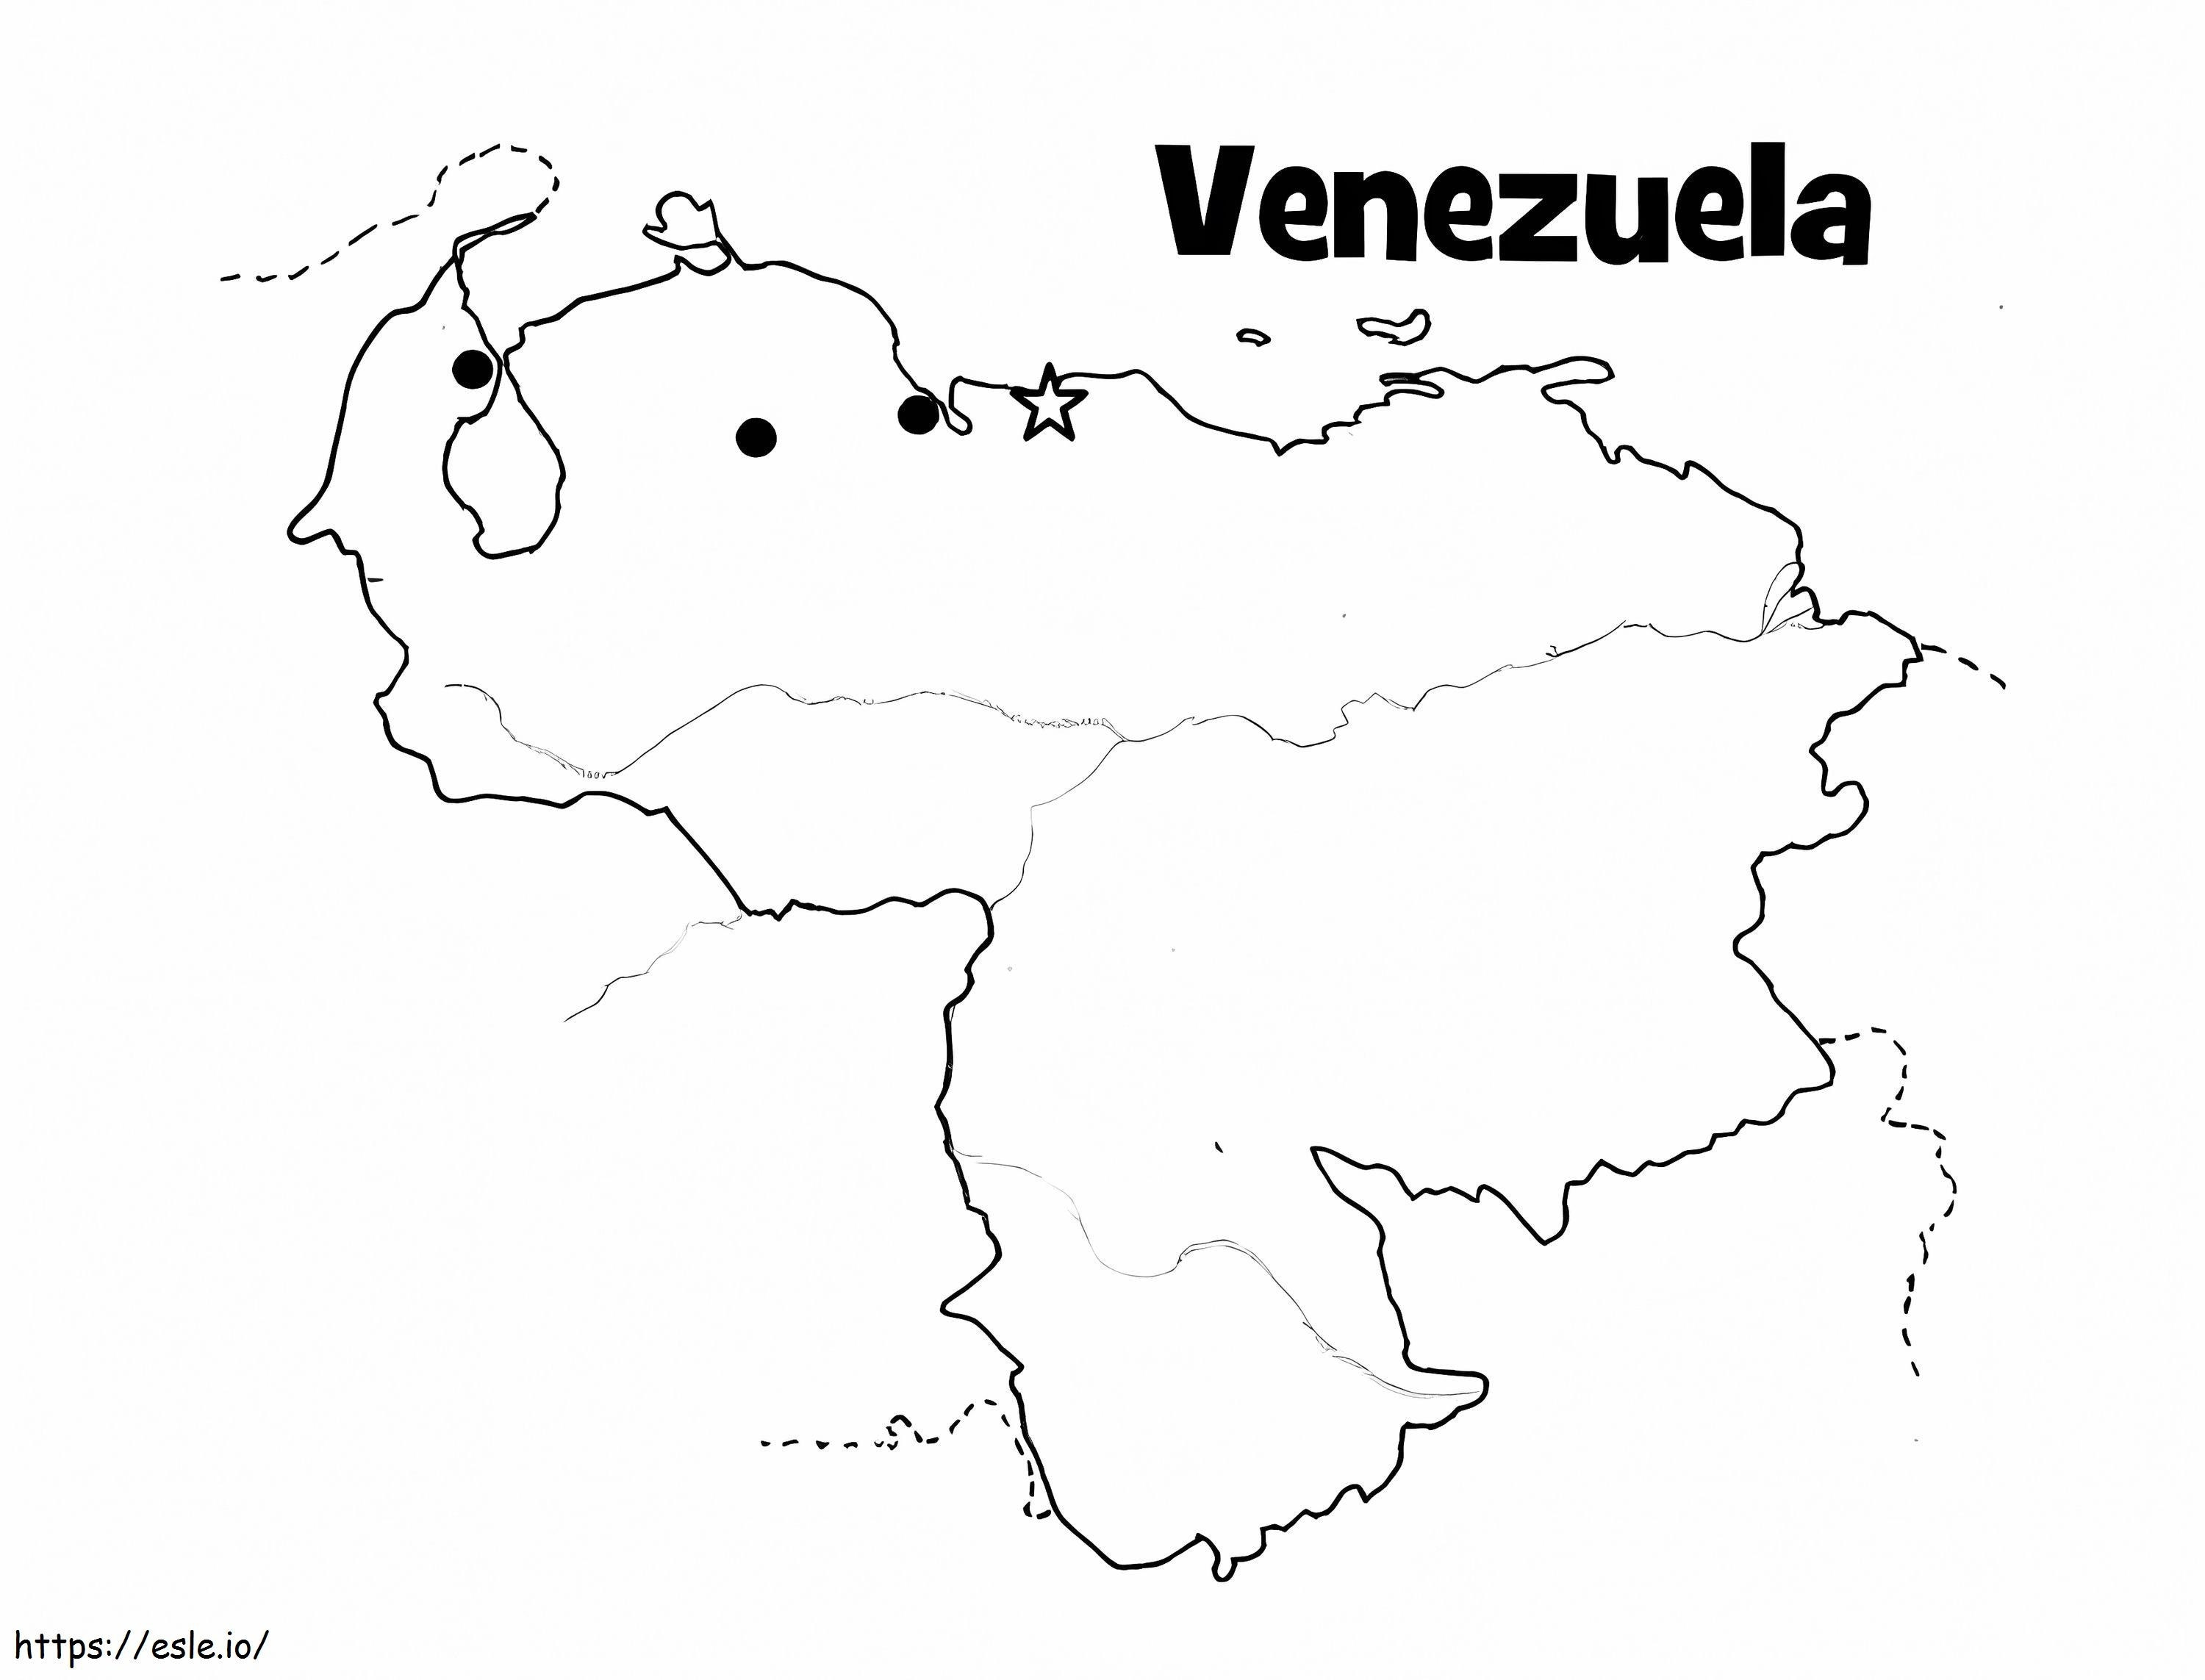 Imagem para colorir do mapa da Venezuela para colorir